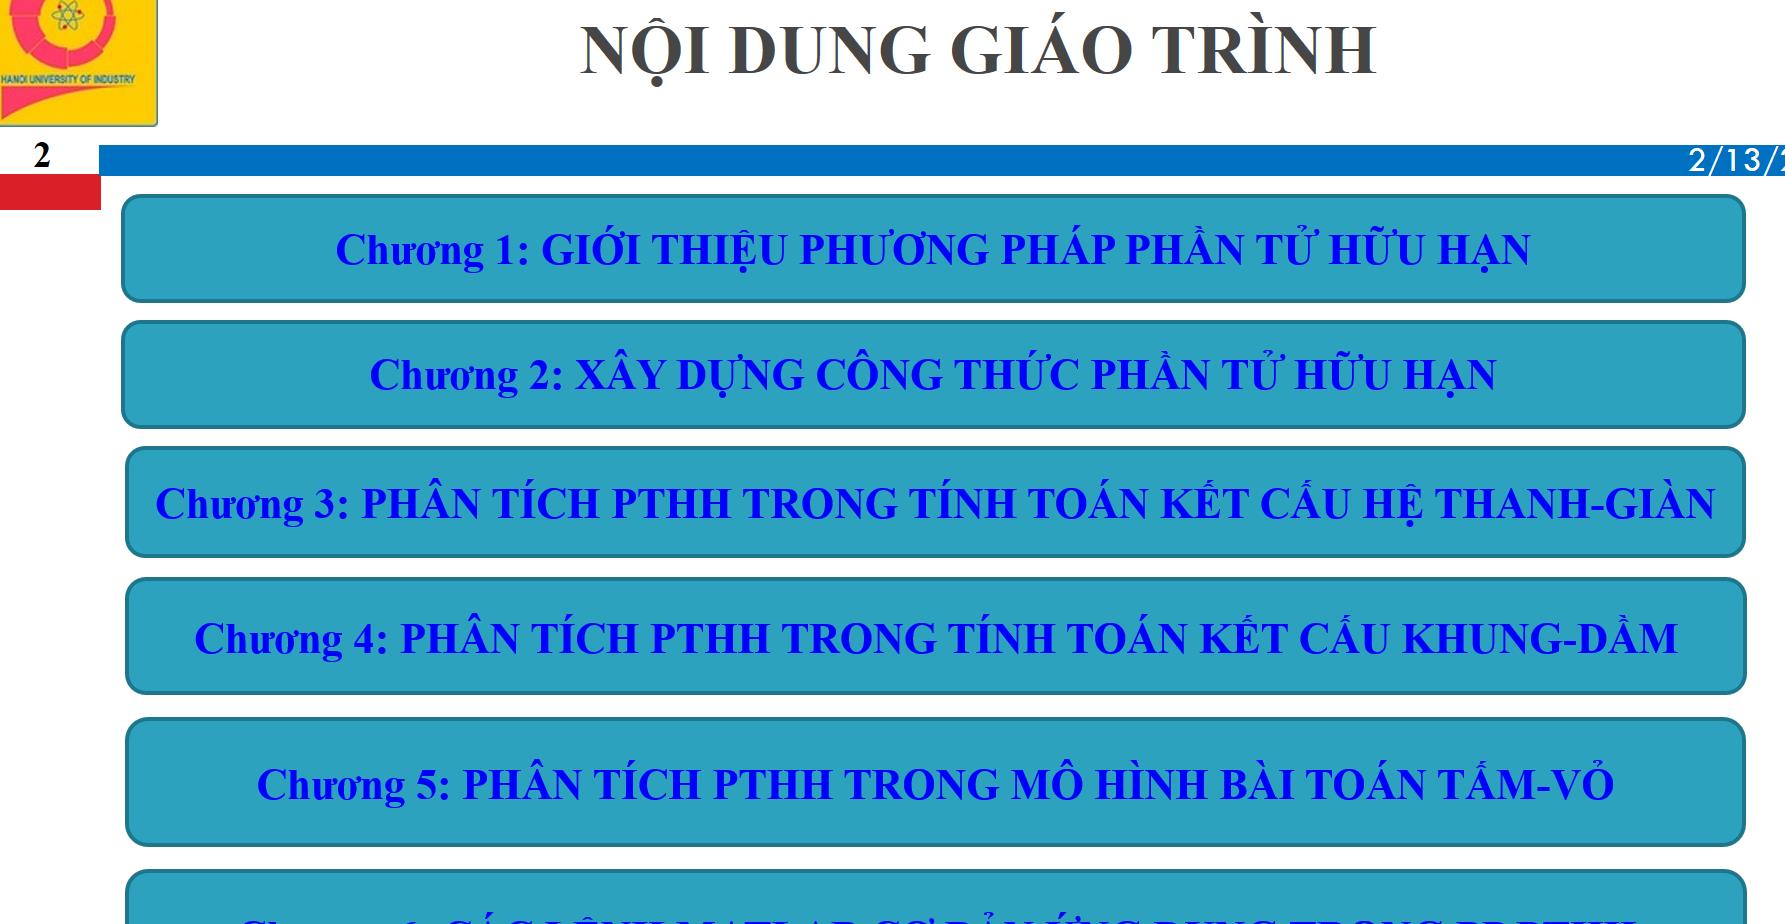 Nghiệm thu giáo trình “Phương pháp phần tử hữu hạn” do TS. Nguyễn Văn Luật làm chủ biên